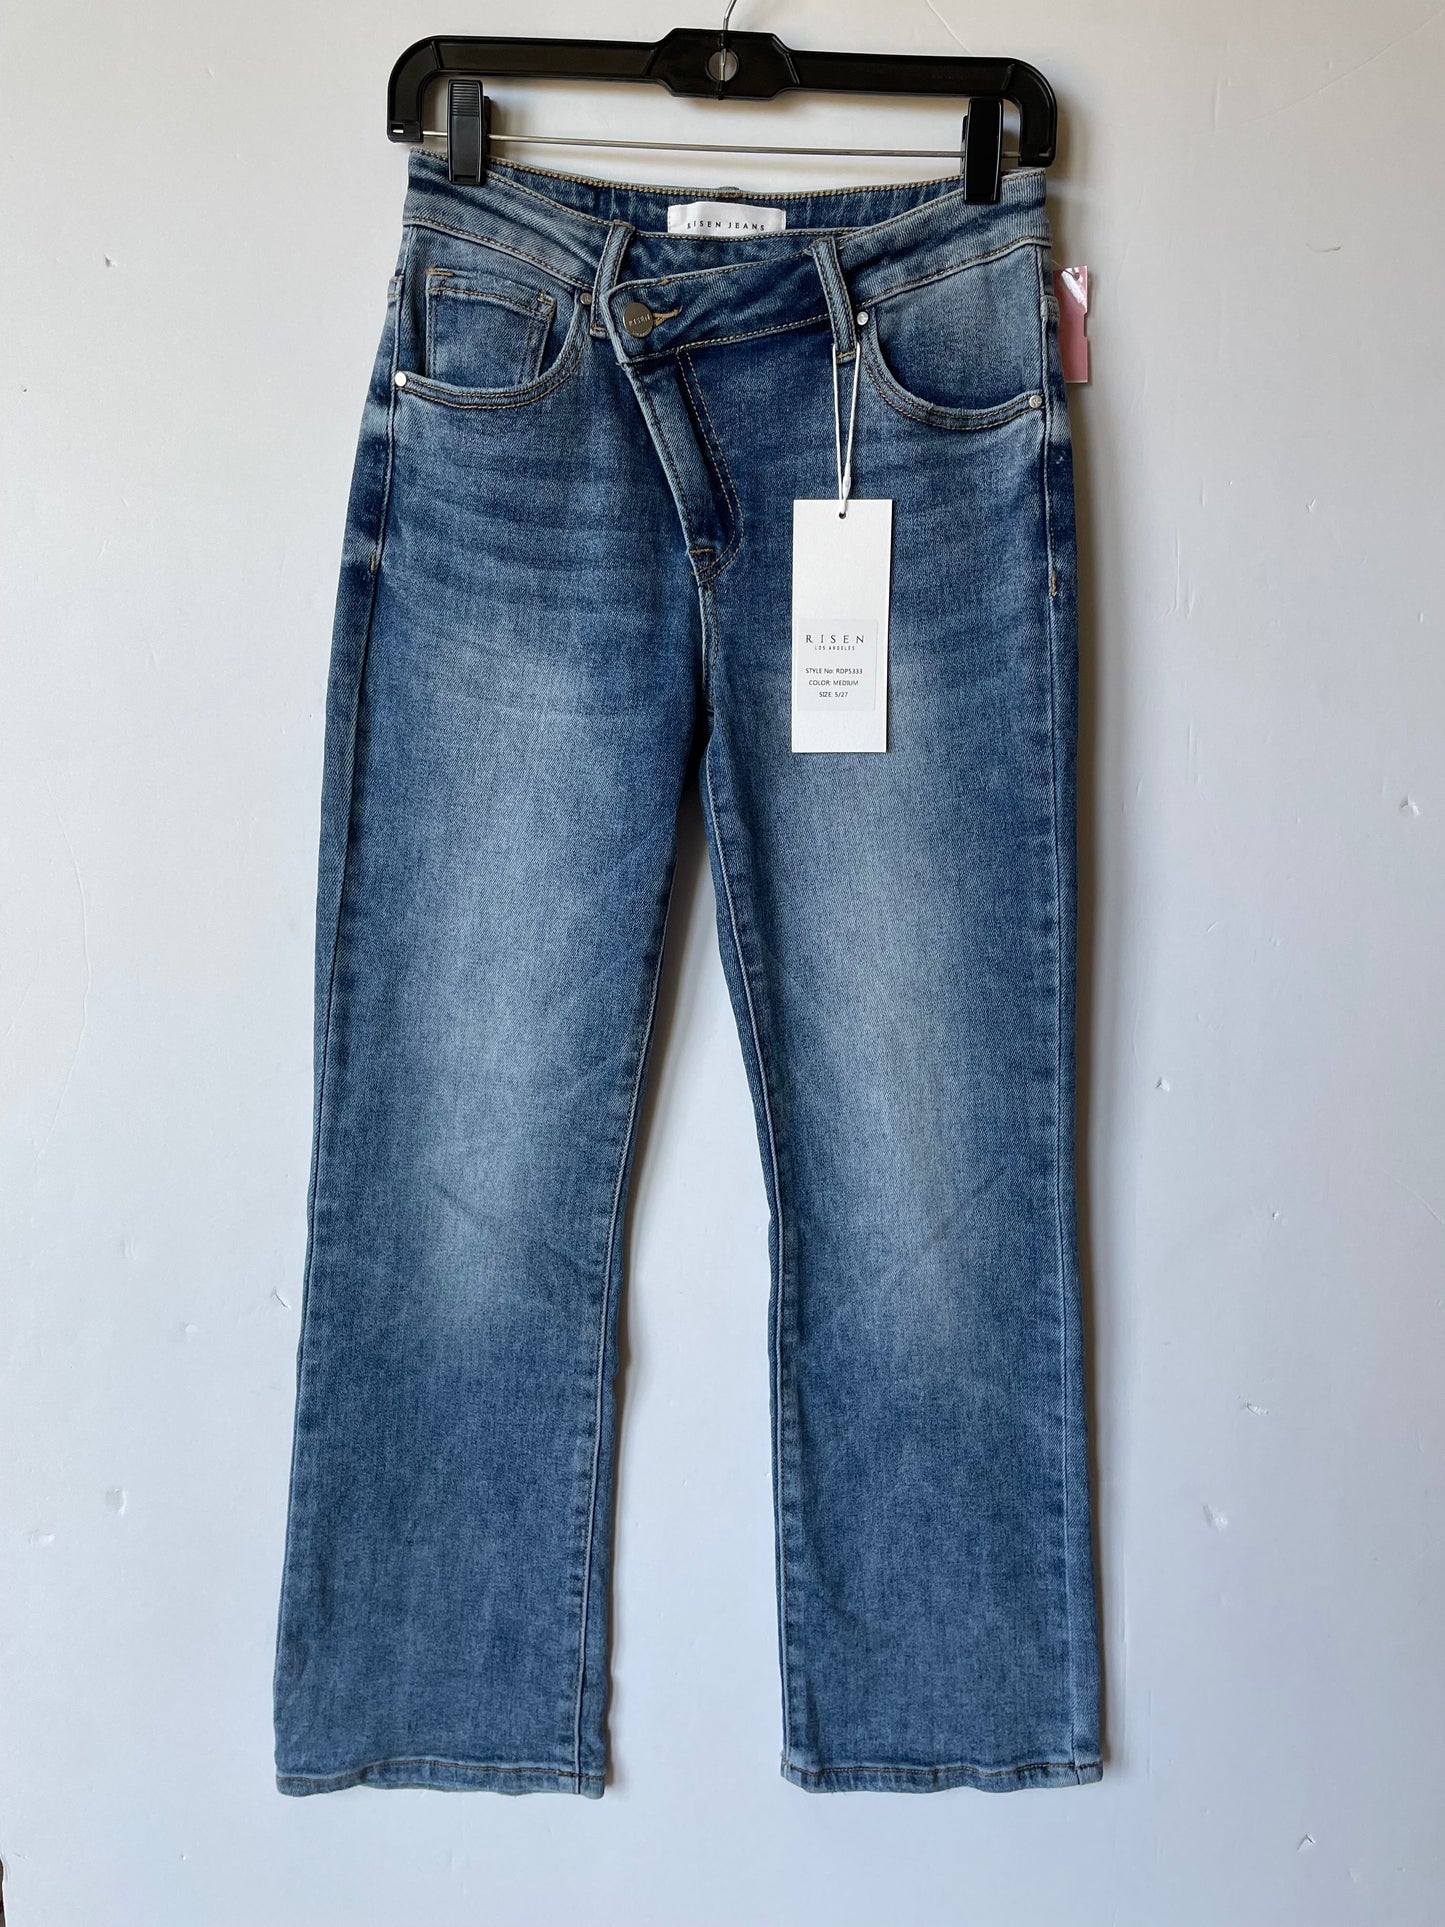 Blue Denim Jeans Boot Cut Risen, Size 4